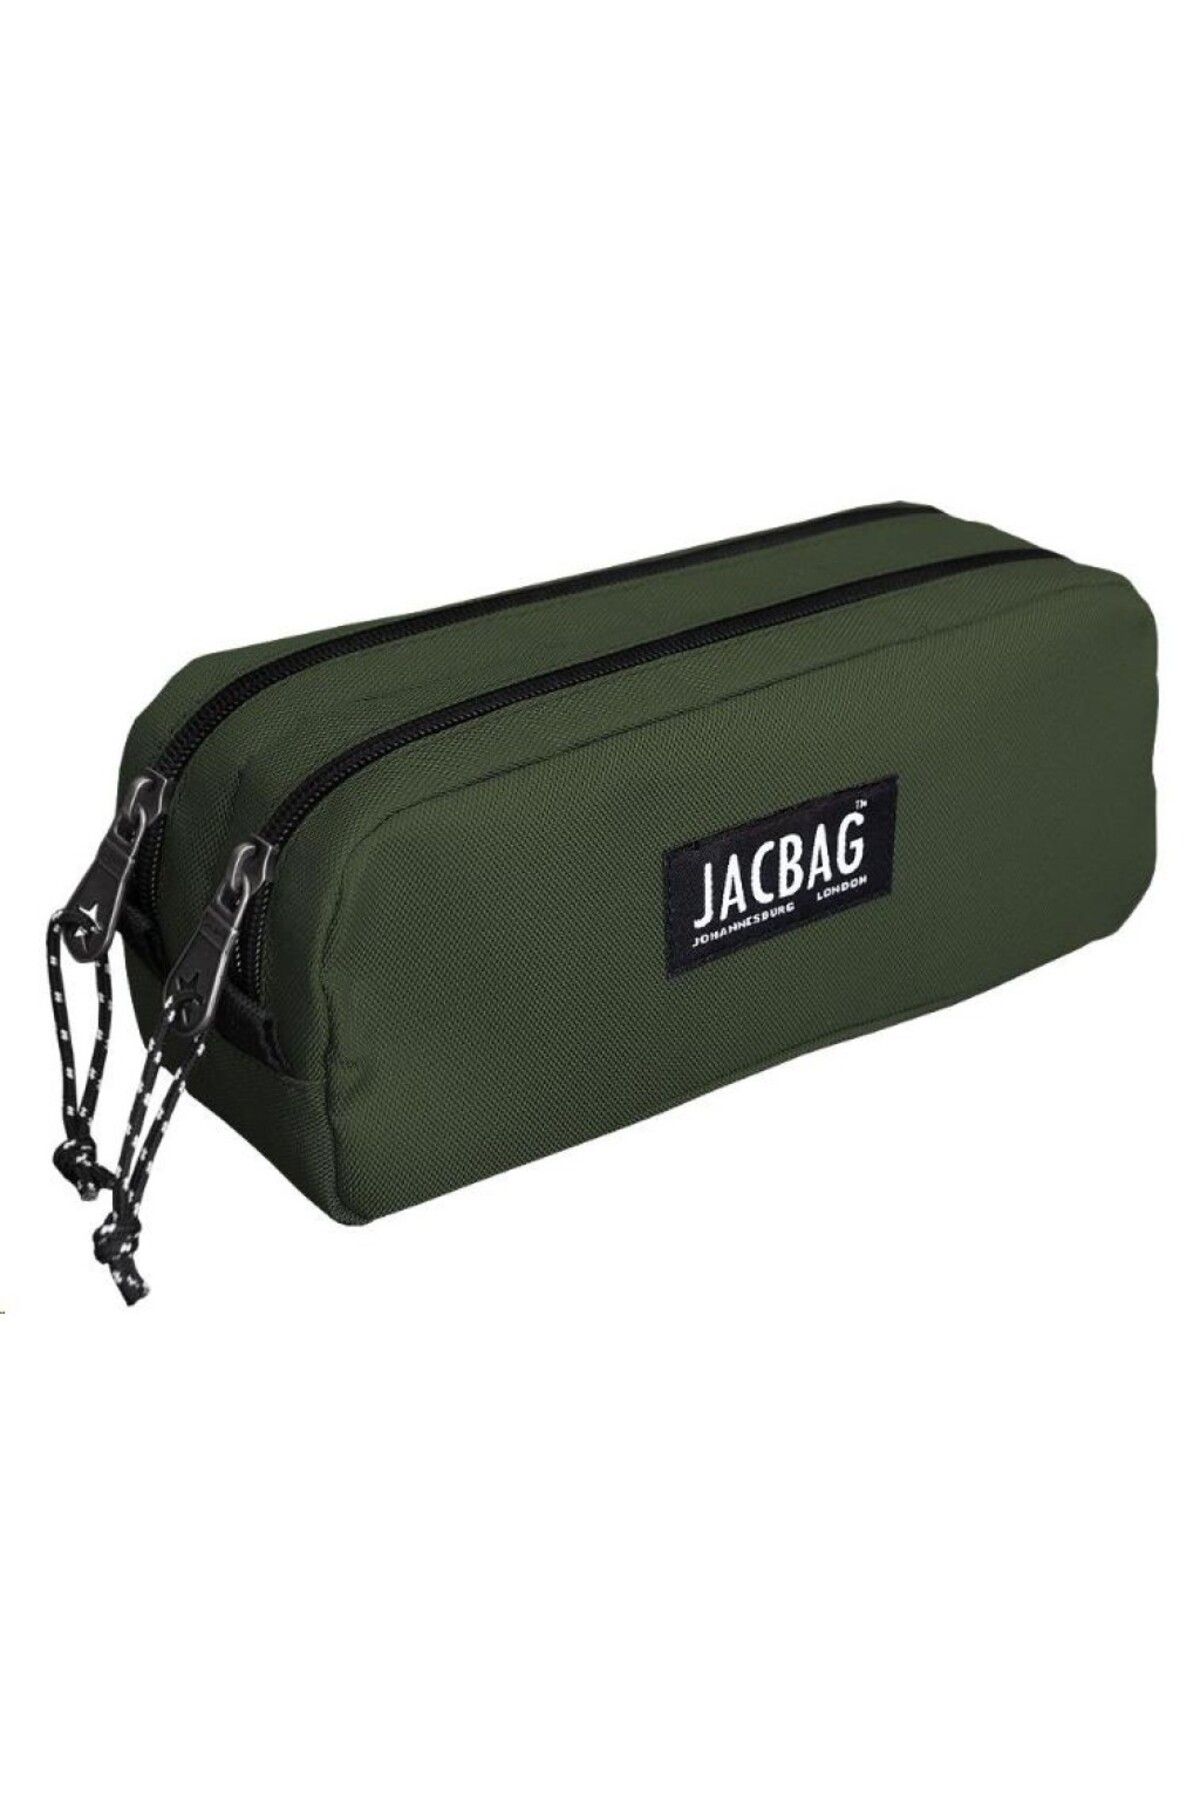 jacbag Dual Pouch-iki Bölmeli Kalem Çantası Haki Yeşil Jac-08